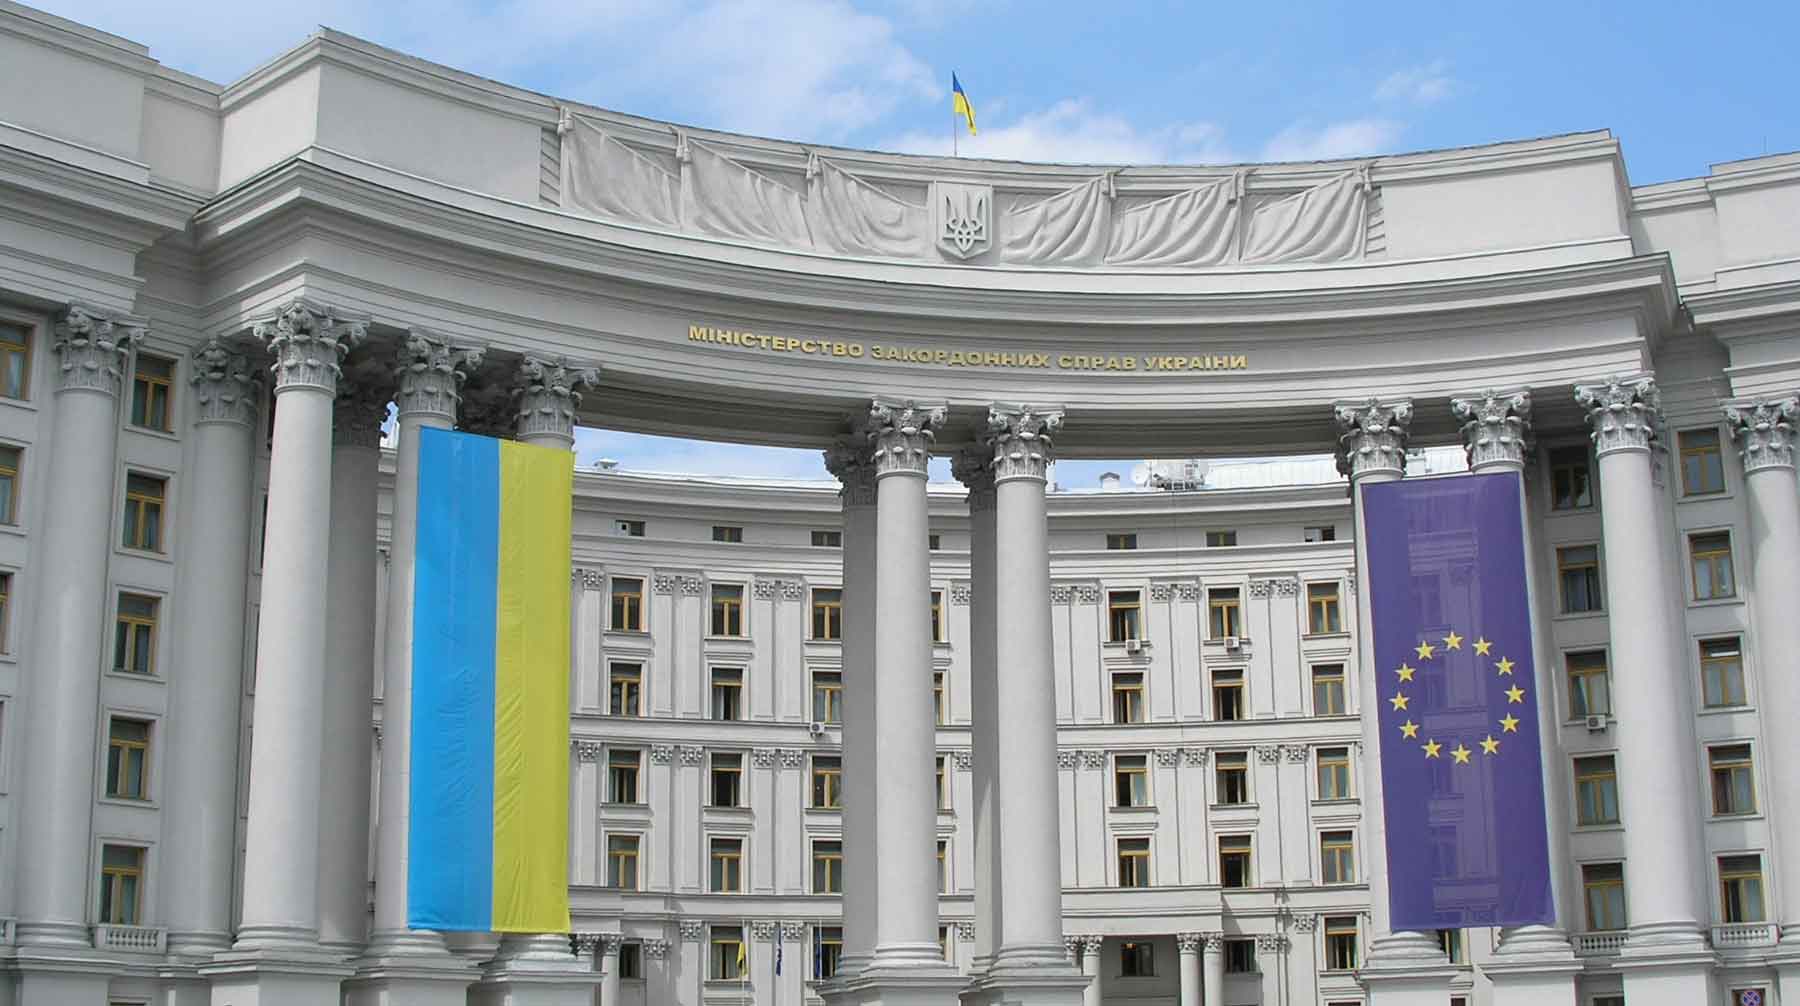 Причина резкой смены тона в диалоге между дипведомствами непонятна, заявила украинская сторона Здание Министерства